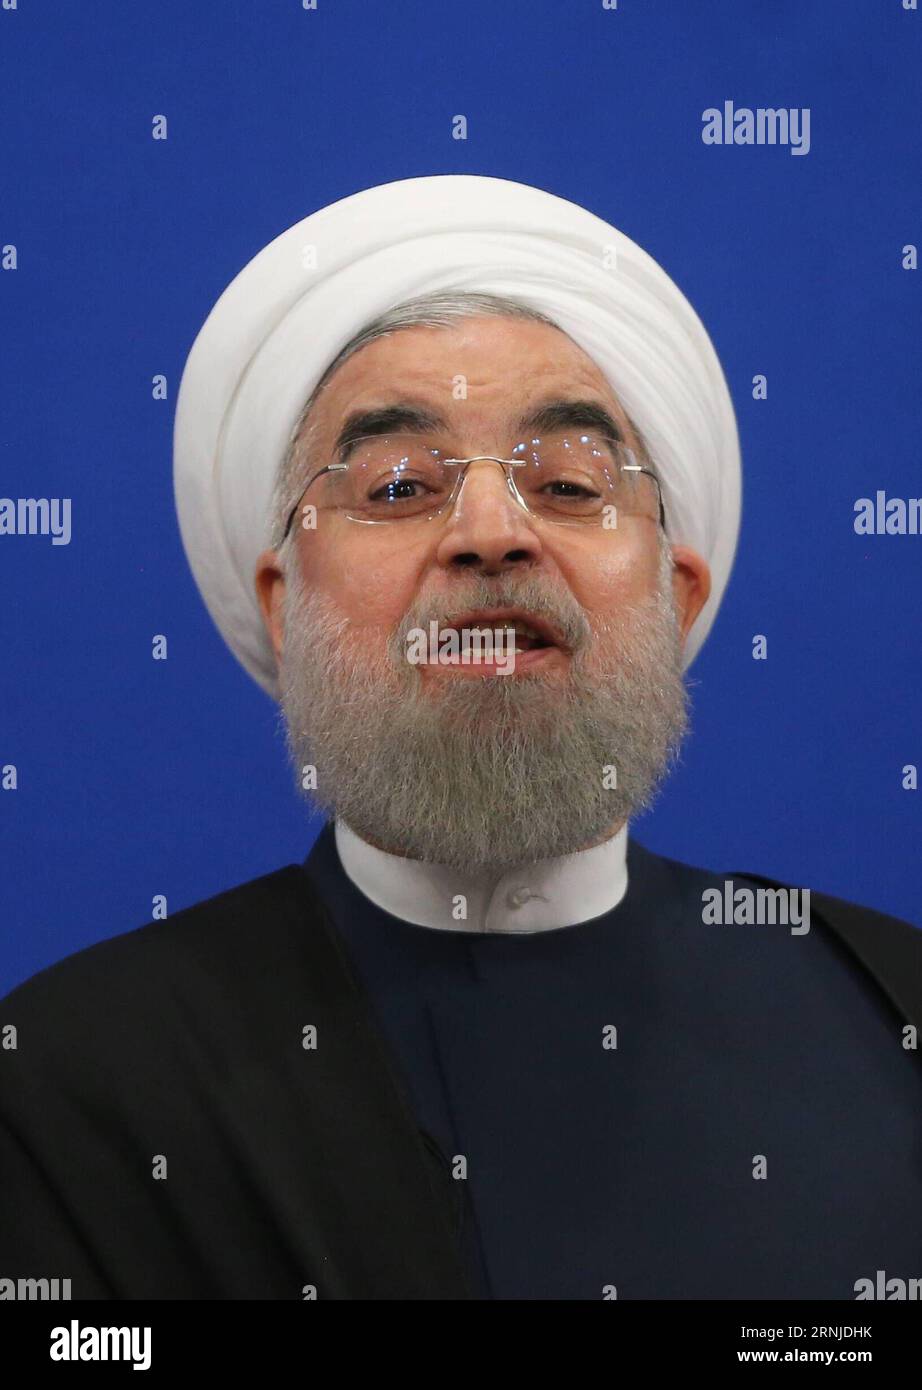 THERAN, le 17 janvier 2017 -- le président iranien Hassan Rouhani prend la parole lors d'une conférence de presse à Téhéran, en Iran, le 17 janvier 2017. Rouhani a déclaré que l’Iran n’accepterait pas une révision de son accord nucléaire international, ont rapporté mercredi les médias locaux. L accord nucléaire international, connu sous le nom de Plan d action global conjoint (JCPOA), a résolu la question nucléaire controversée de Téhéran qui dure depuis une décennie. (gl) IRAN-TÉHÉRAN-HASSAN ROUHANI-NEWS CONFERENCE AhmadxHalabisaz PUBLICATIONxNOTxINxCHN THERAN Jan 17 2017 le président iranien Hassan Rouhani prend la parole lors d'une conférence de presse à TÉHÉRAN Iran LE 17 2017 janvier Rouhani Banque D'Images